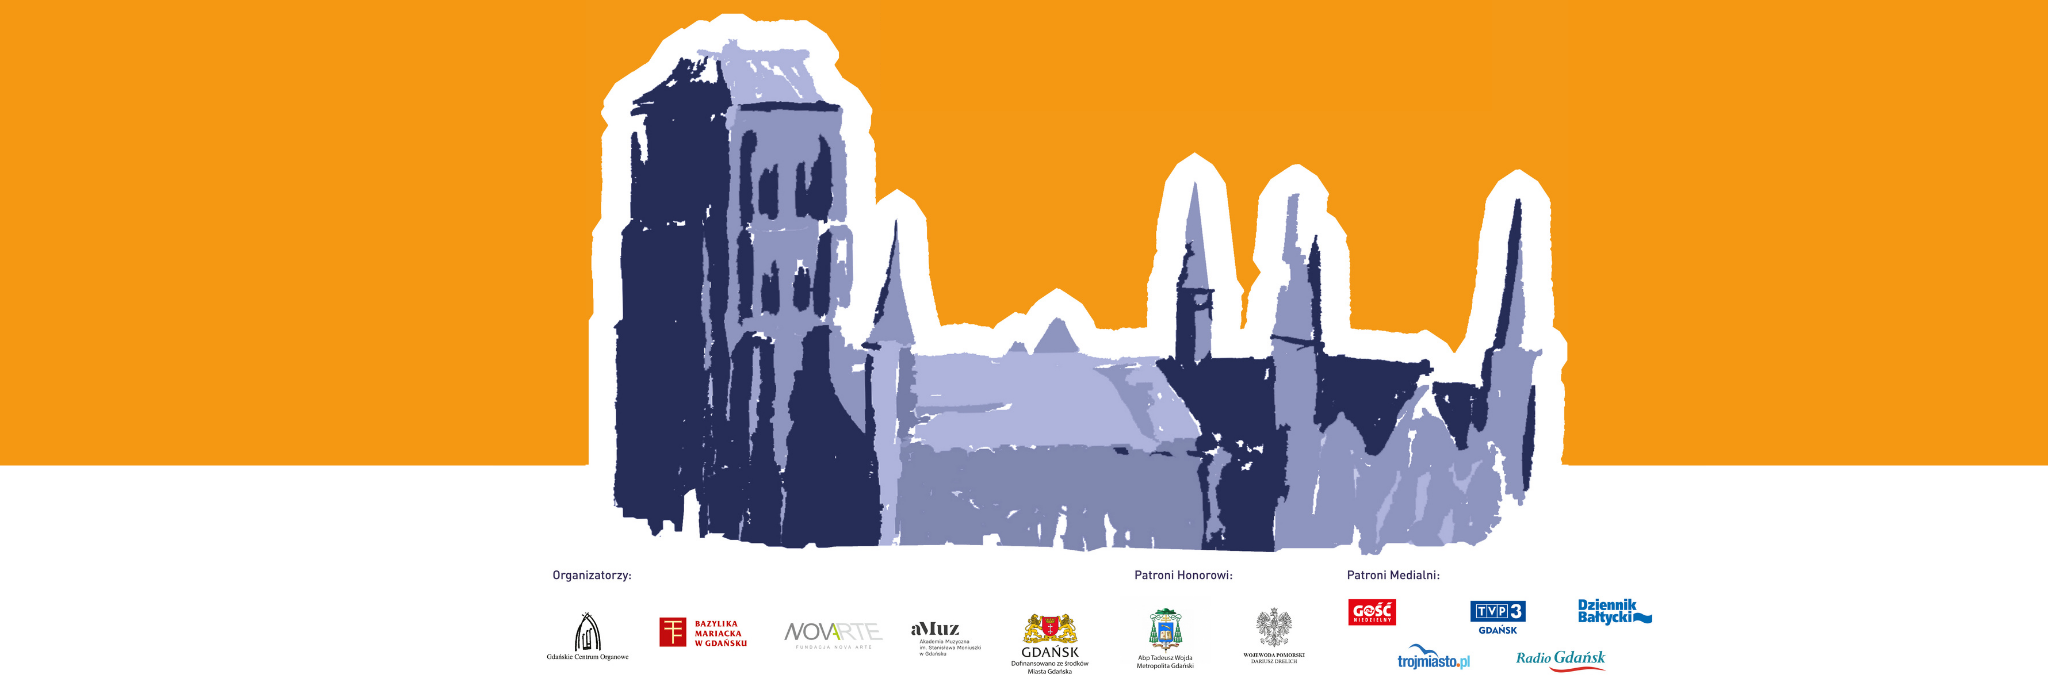 obrazek przedstawia fragment plakatu promującego wydarzenie 44. międzynarodowego festiwalu organowego. tło pomarańczowe, w centrum grafiki - rysunkowa Bazylika Mariacka. Dole grafiki umieszczone zostały logotypy organizatorów i partnerów.